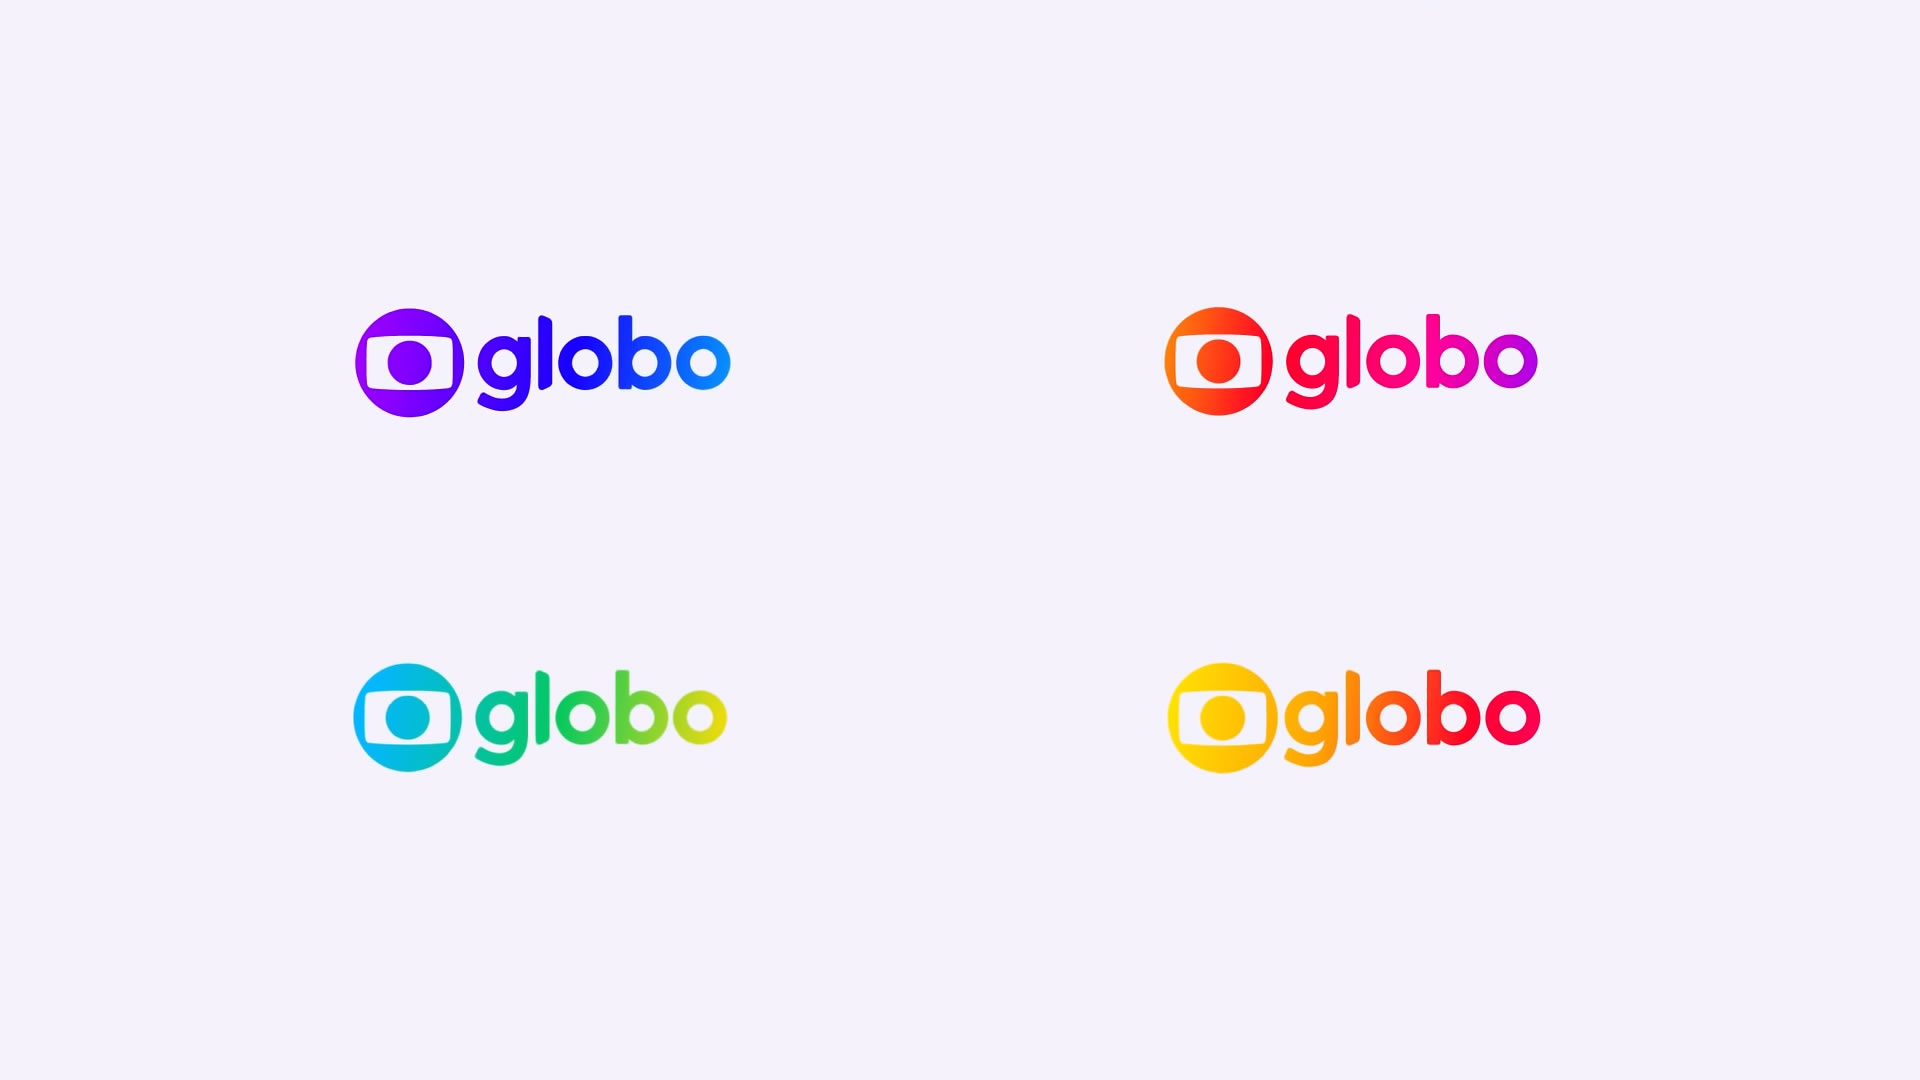 Globonews traz a notícia como protagonista em nova identidade visual